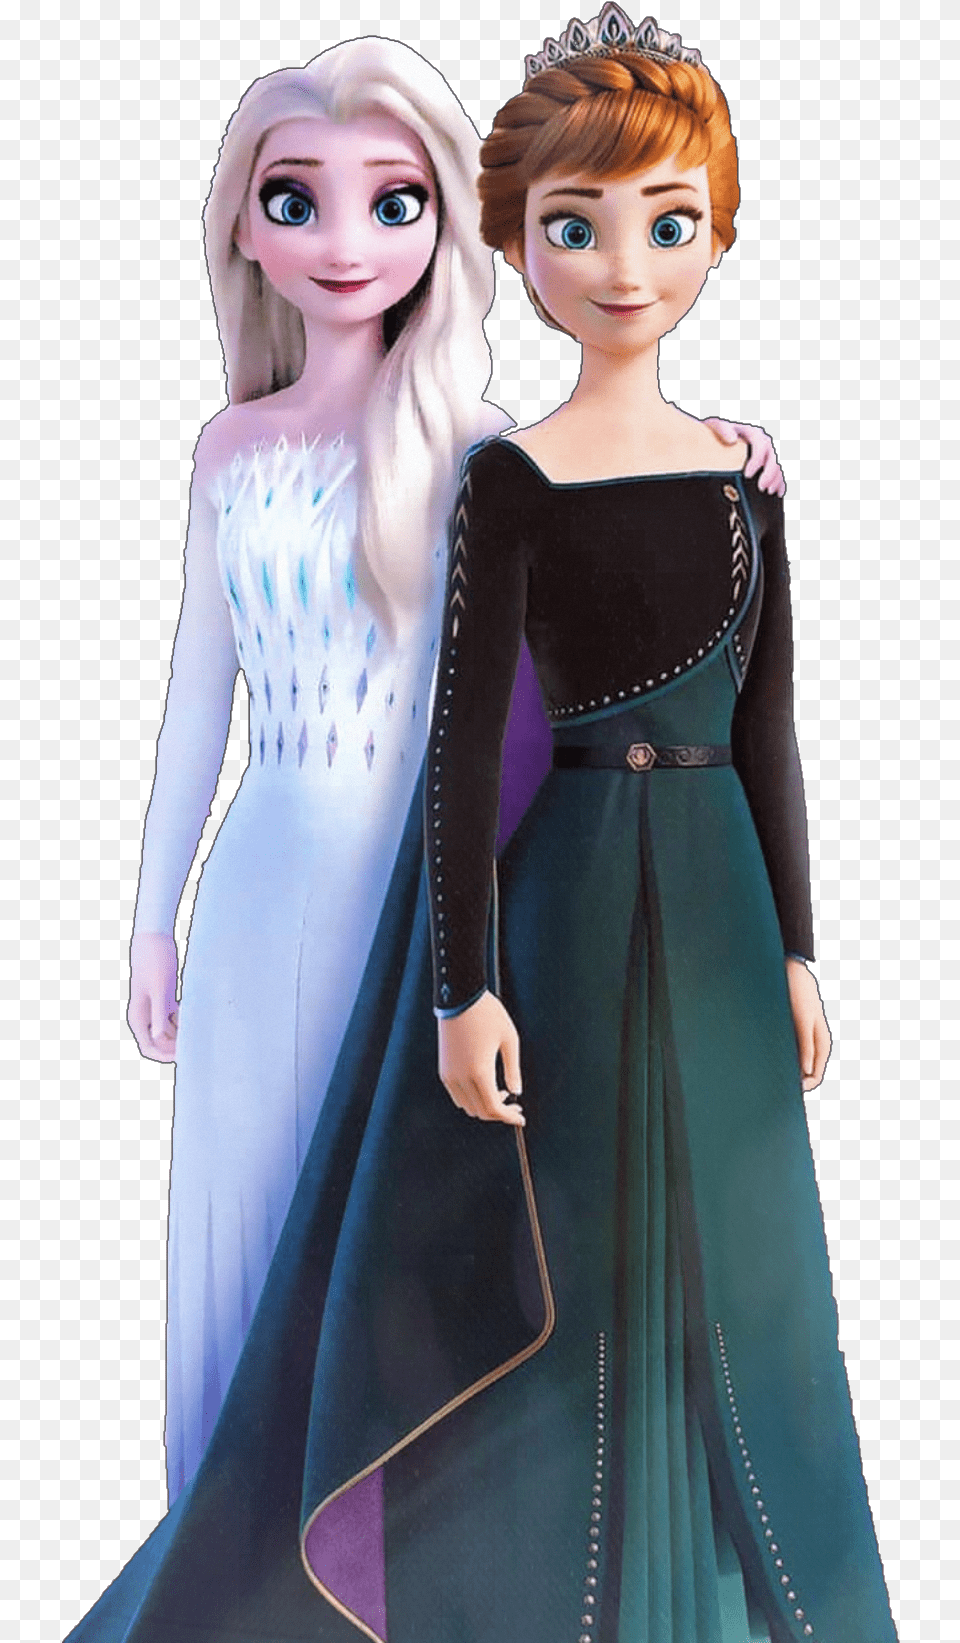 Elsa Anna Elsaandanna Frozen Frozen2 Frozen 2 Queen Anna, Adult, Toy, Person, Woman Free Png